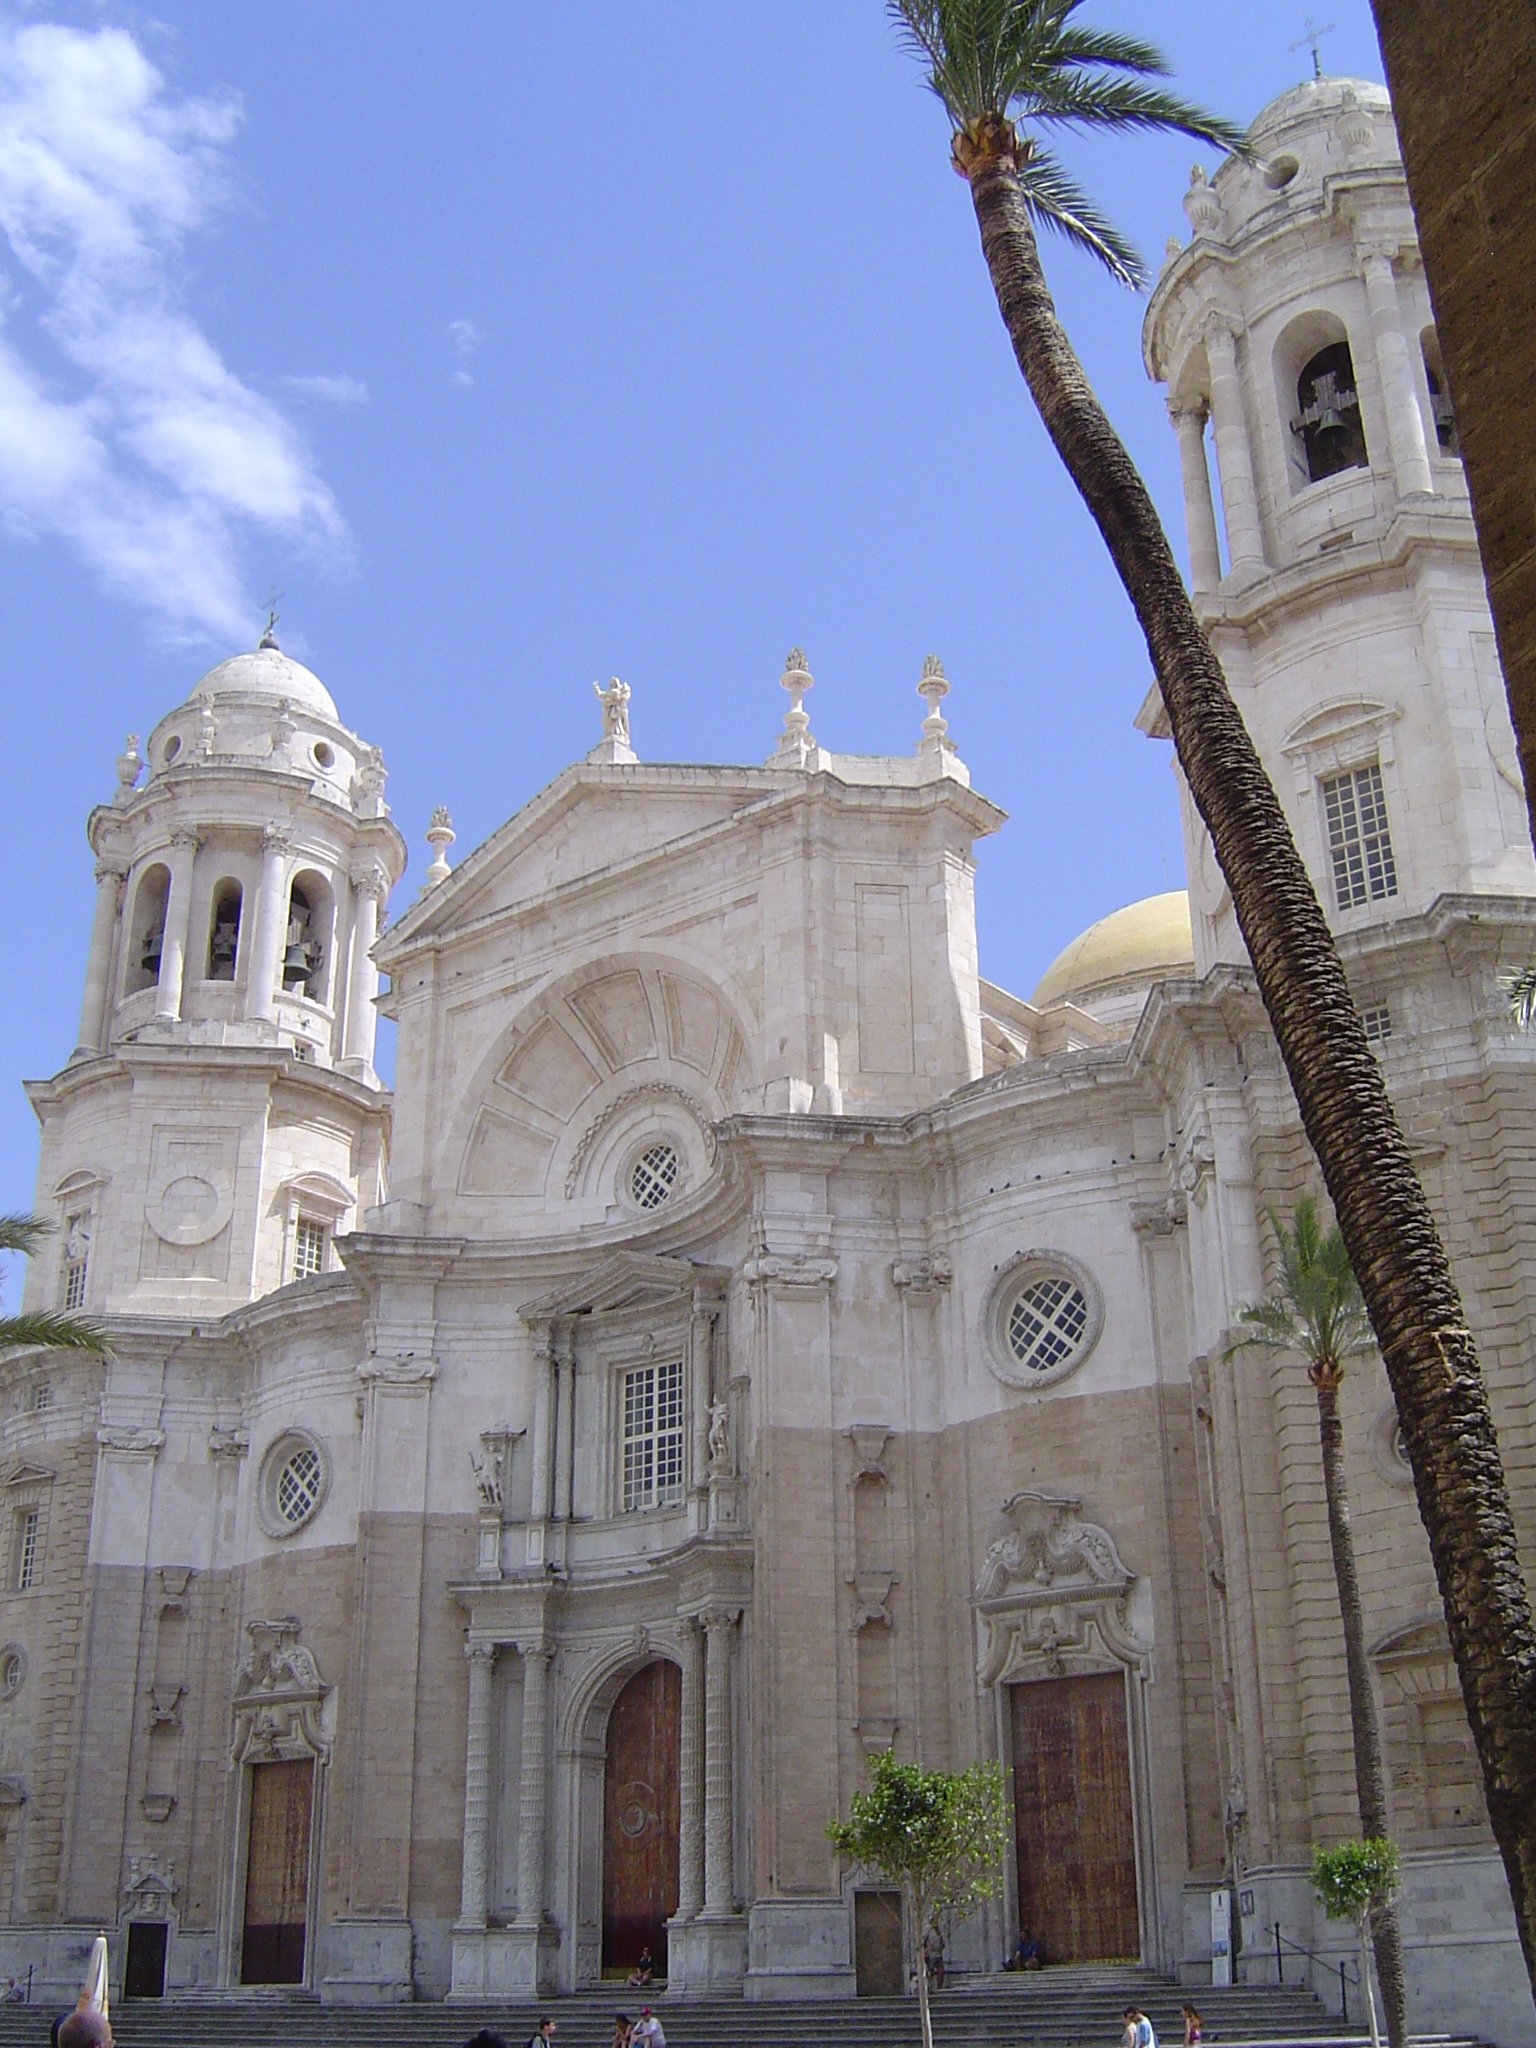 Catedral de Cádiz.jpg